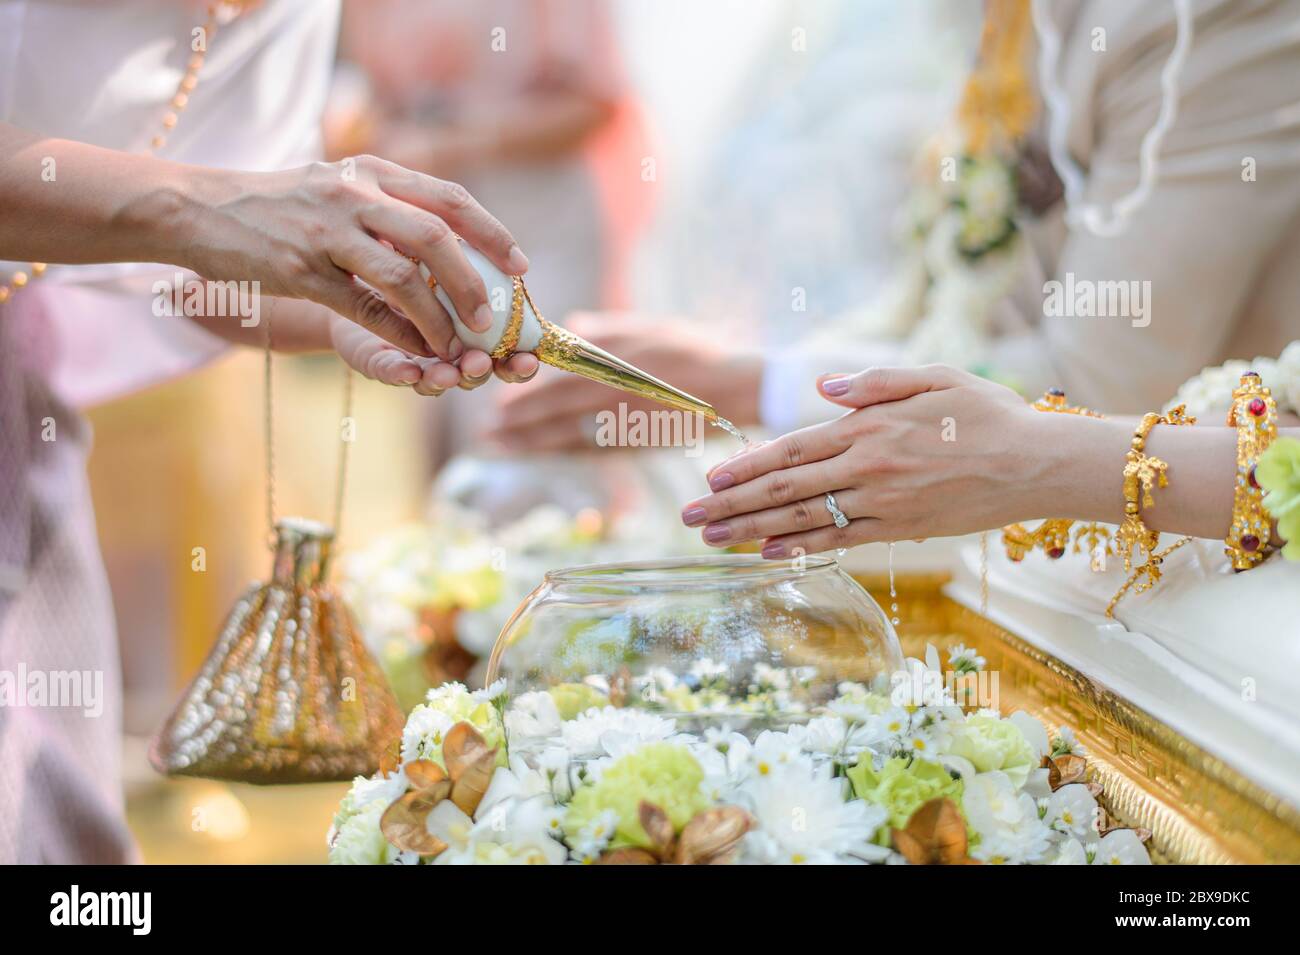 Ceremonia de vertido de agua Santa sobre manos de novia y novio, compromiso tradicional tailandés de boda Foto de stock